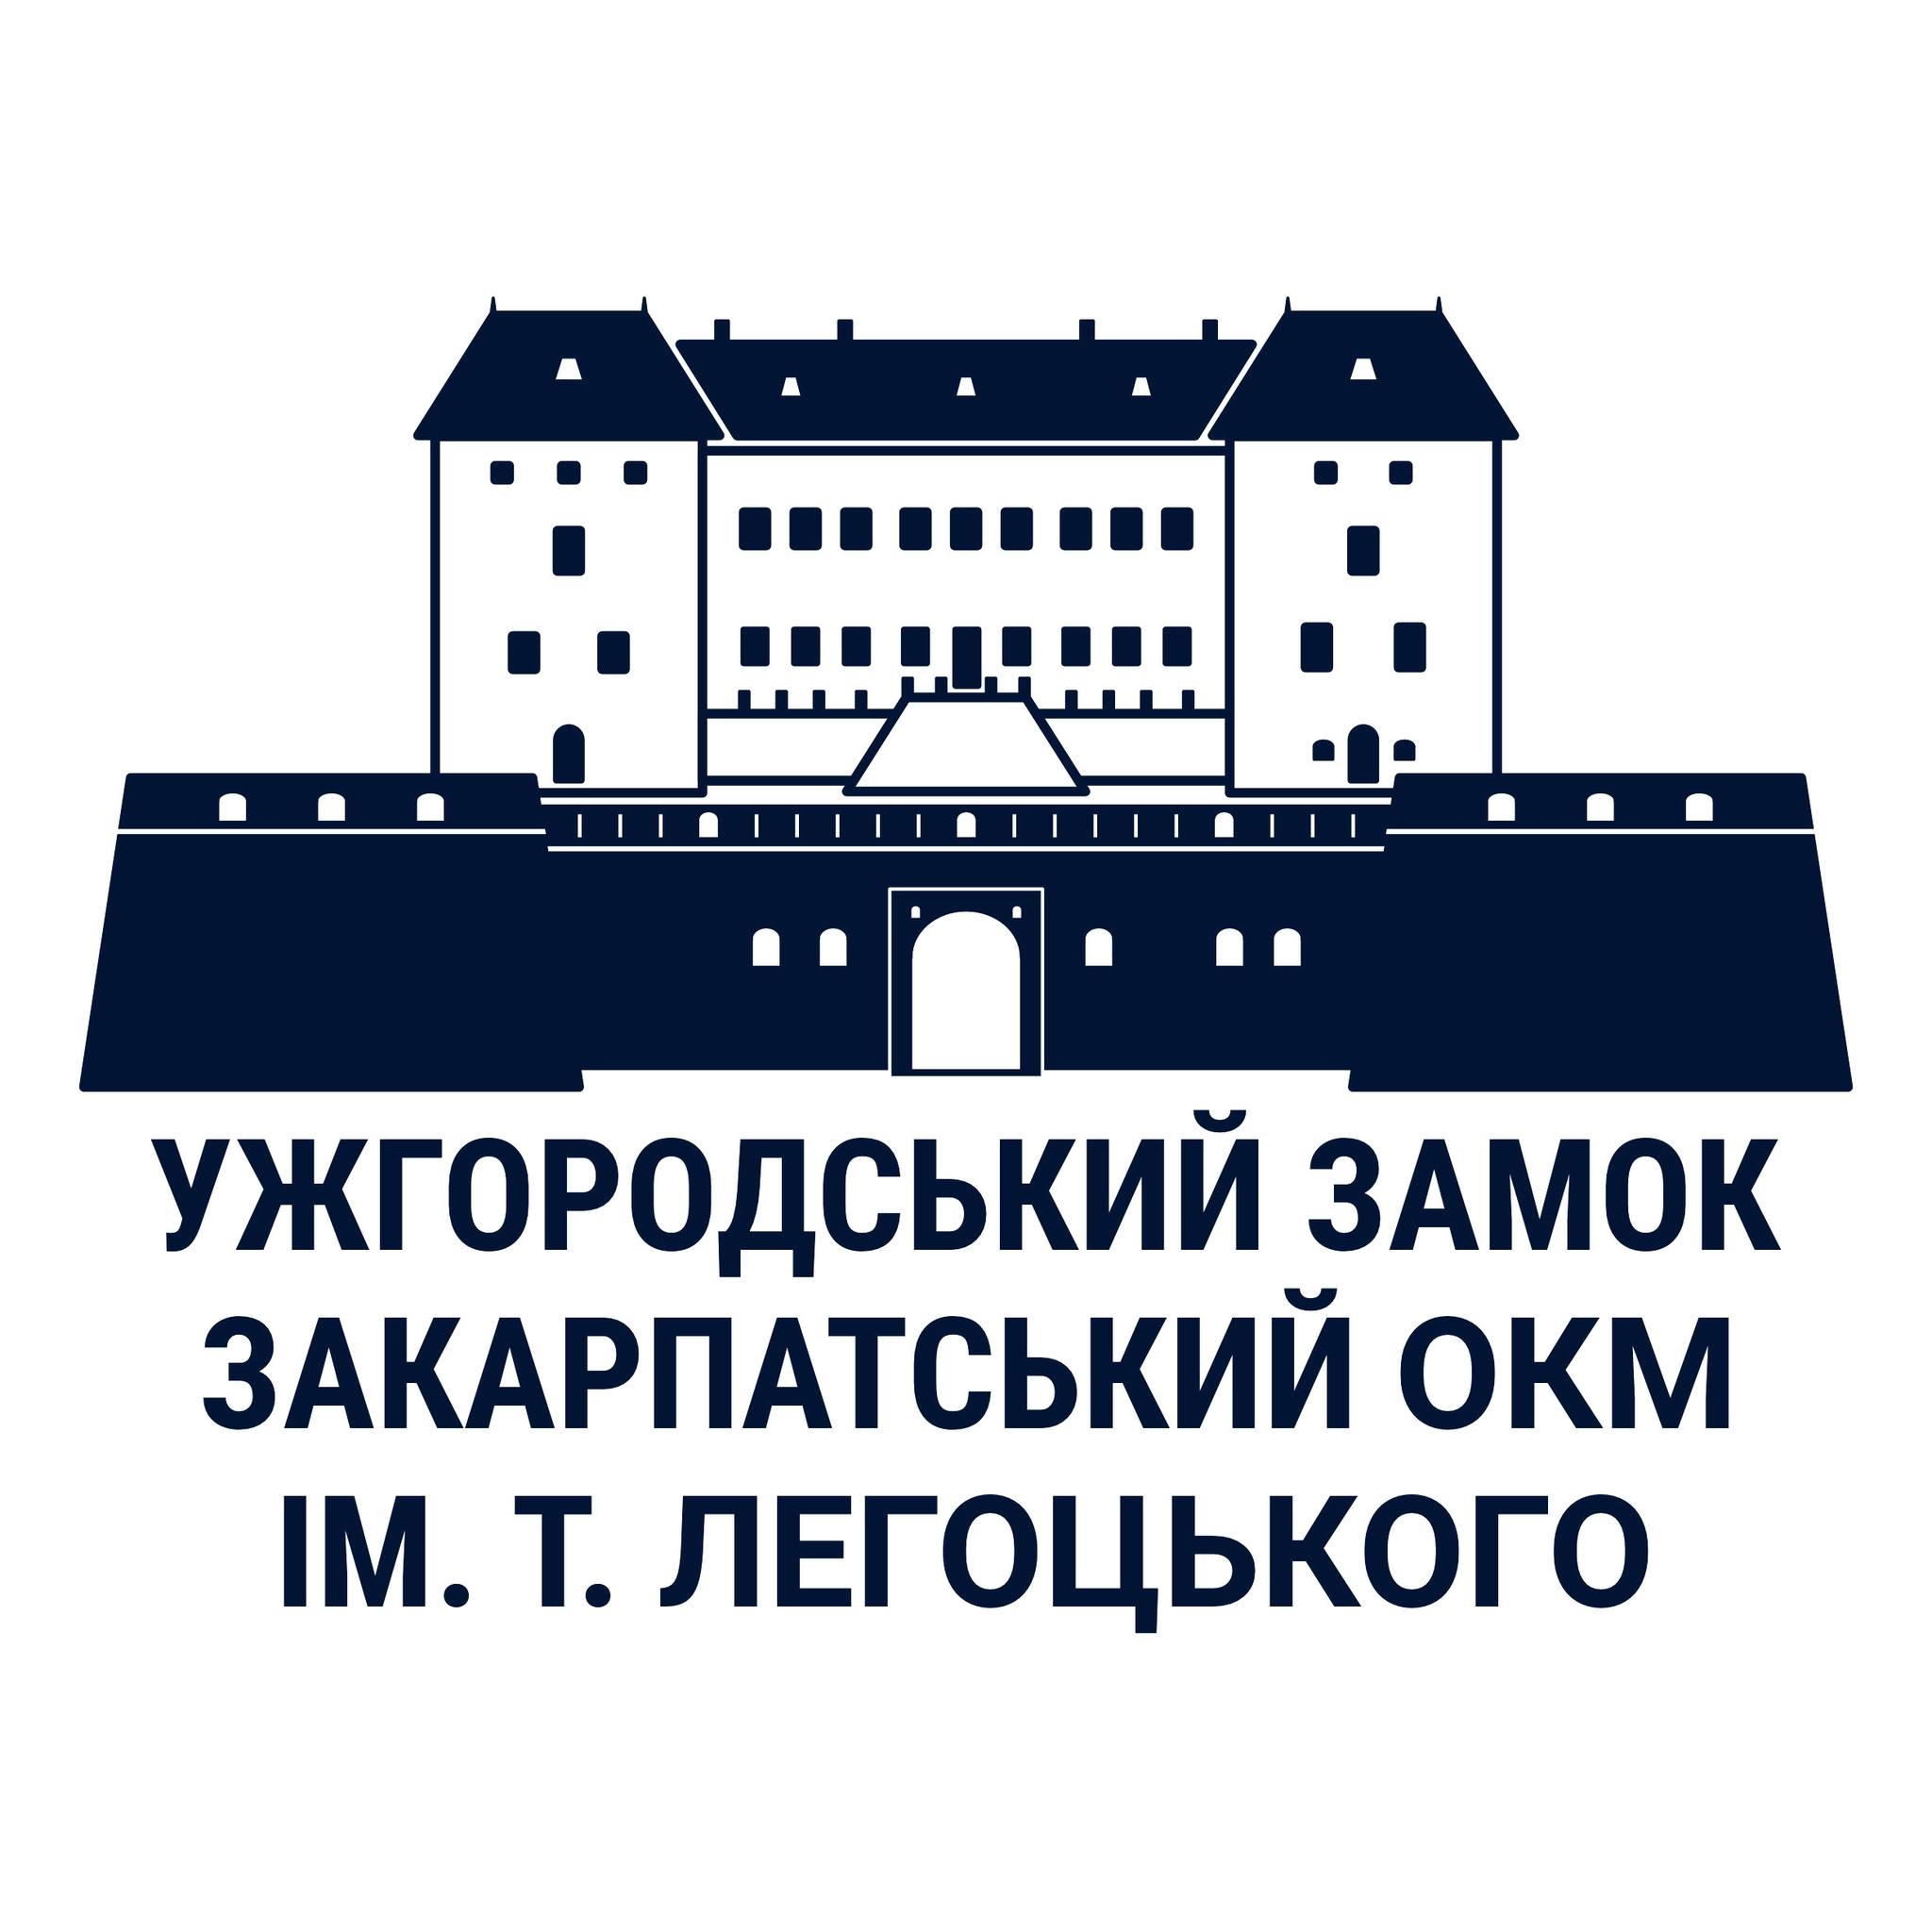 Для Закарпатського краєзнавчого музею розробили логотип (ФОТО)